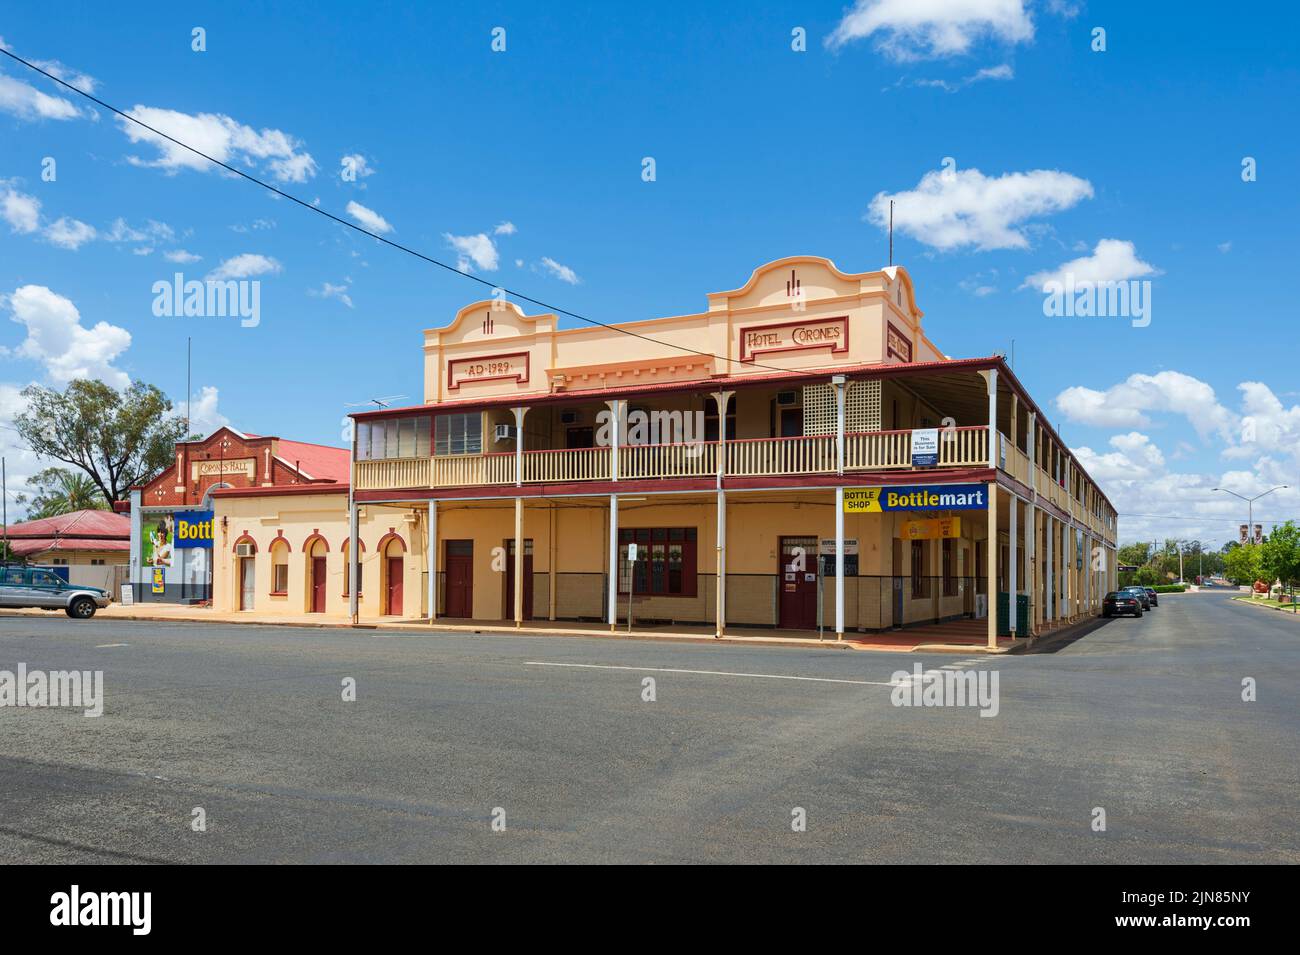 El renombrado e histórico Hotel Corones, construido en los años 20, es un punto de referencia en Charleville, South West Queensland, Queensland, Australia Foto de stock